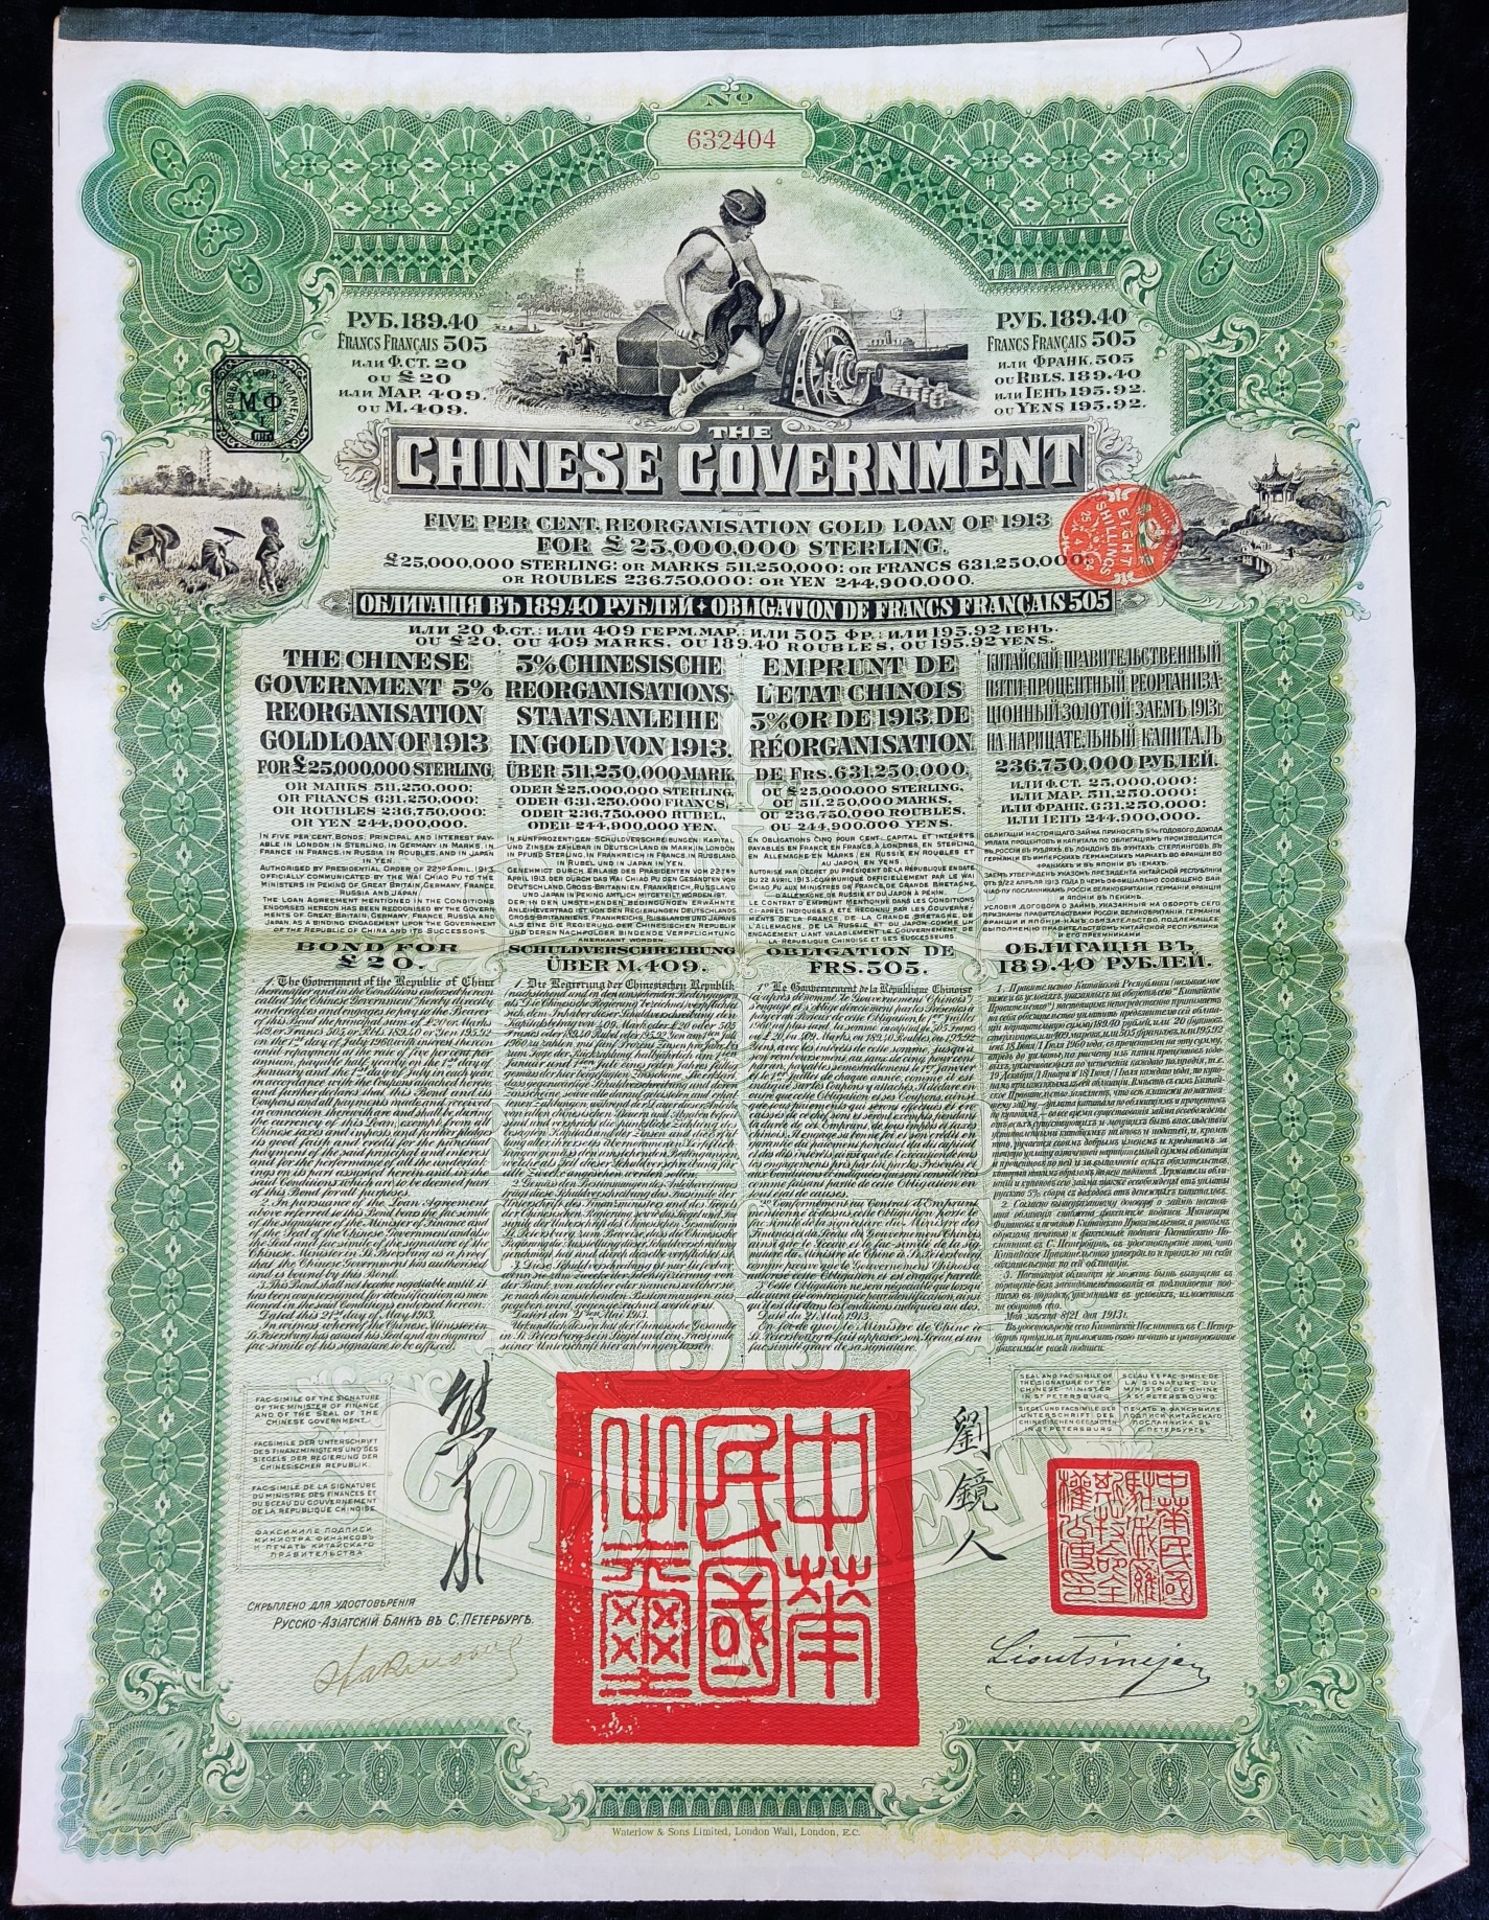 Wertpapier Chinese Government, 1913, seltene russische Ausgabe in Grün